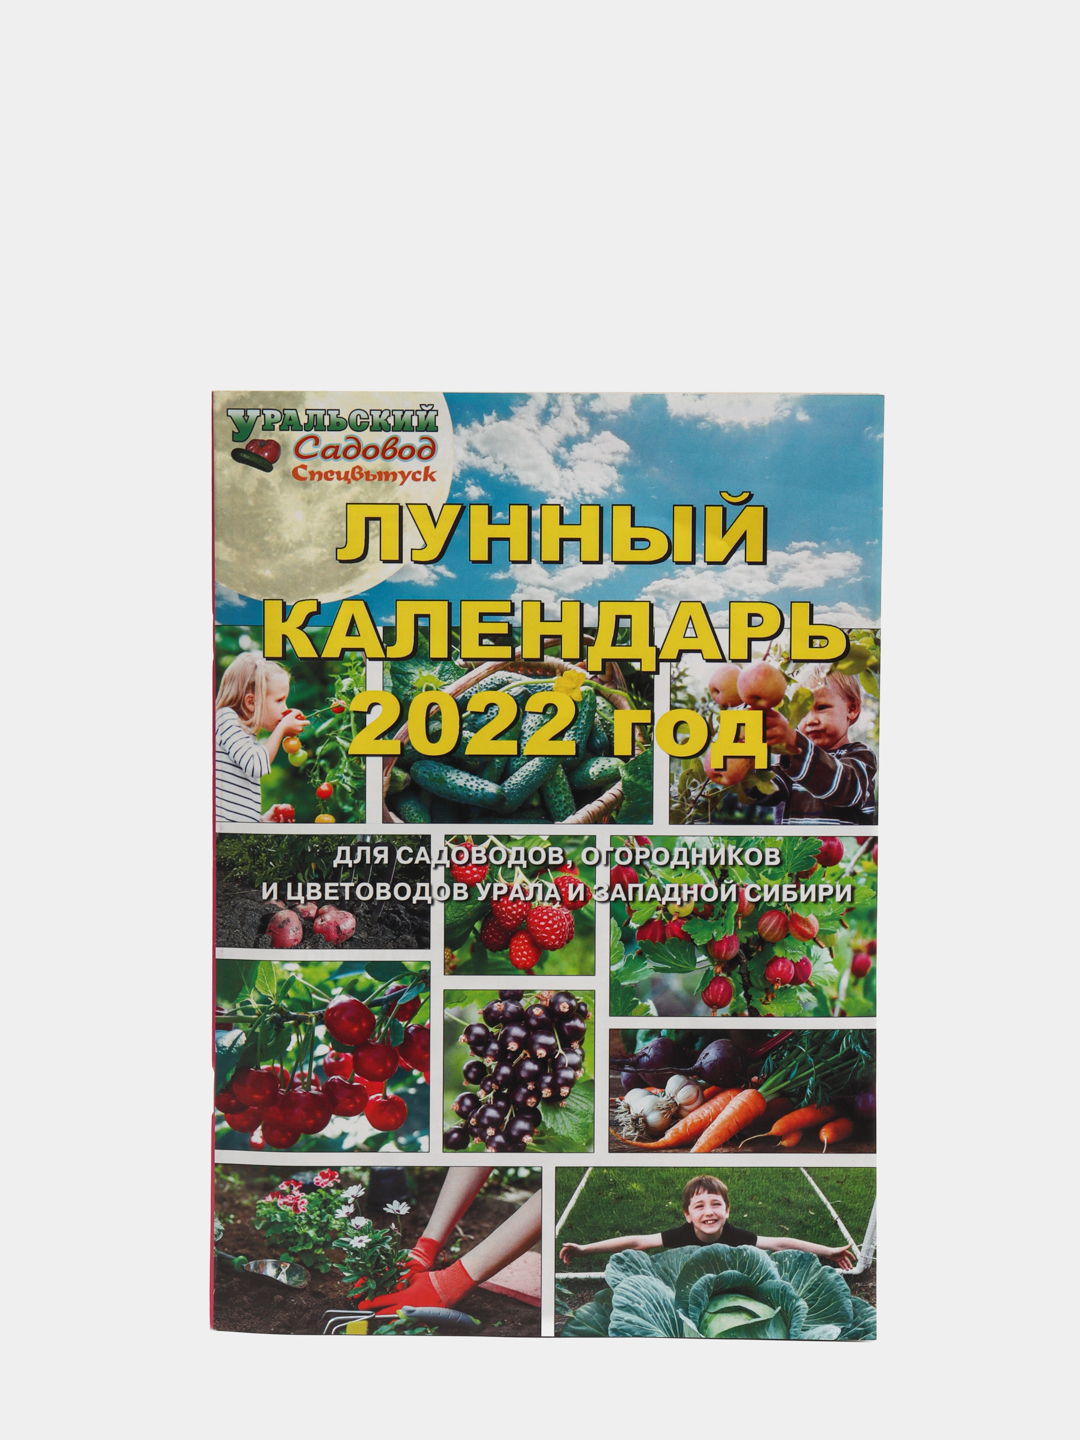 Уральский Садовод. Календарь 2024 для огородников лунный московской области